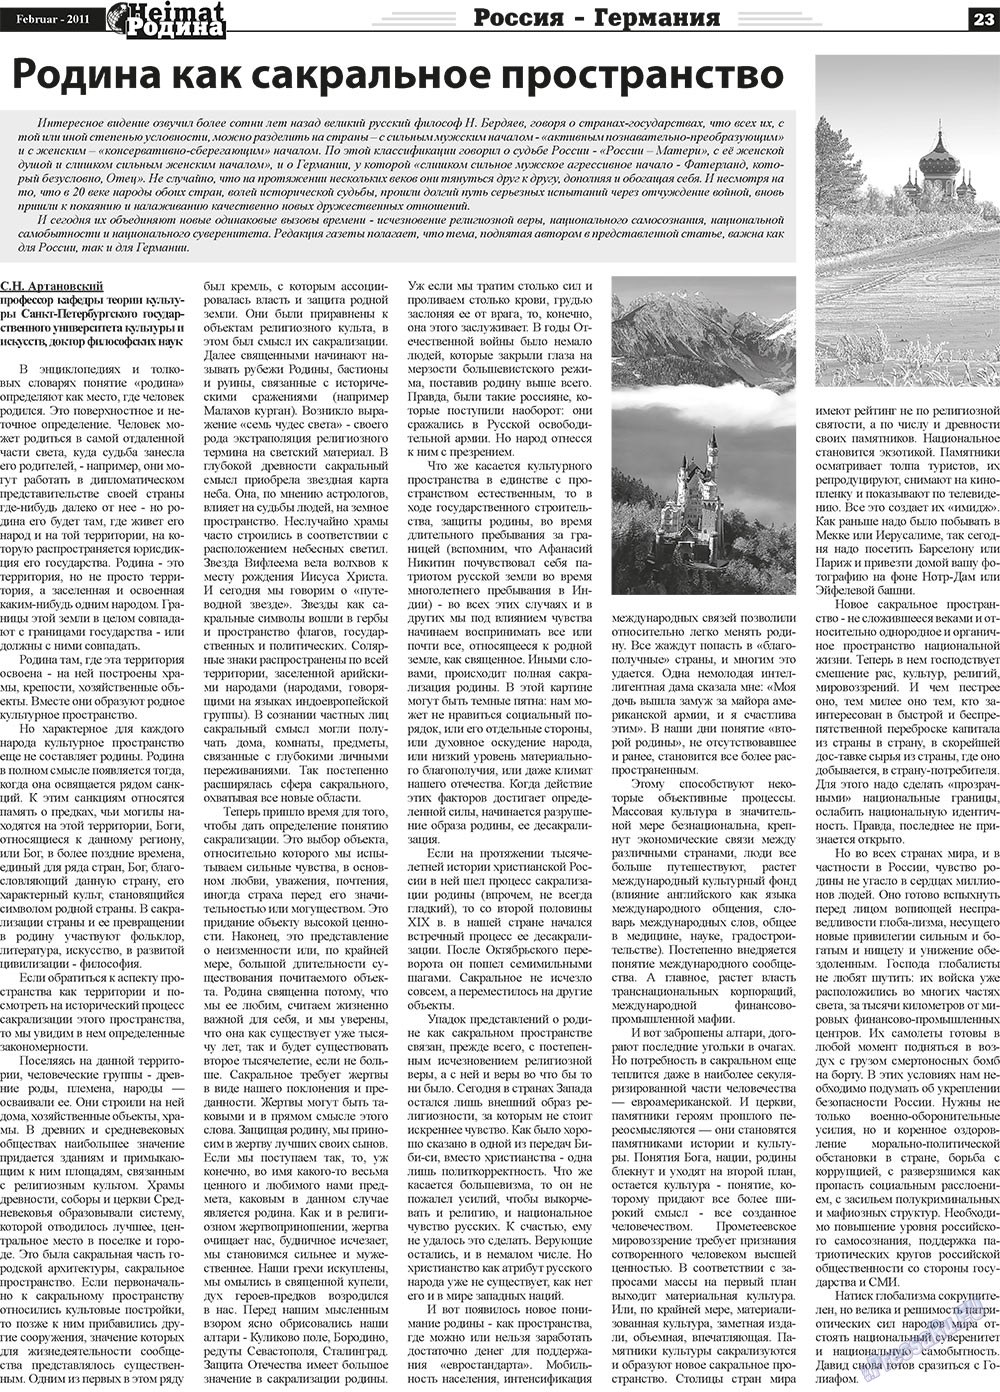 Heimat-Родина (Zeitung). 2011 Jahr, Ausgabe 2, Seite 23